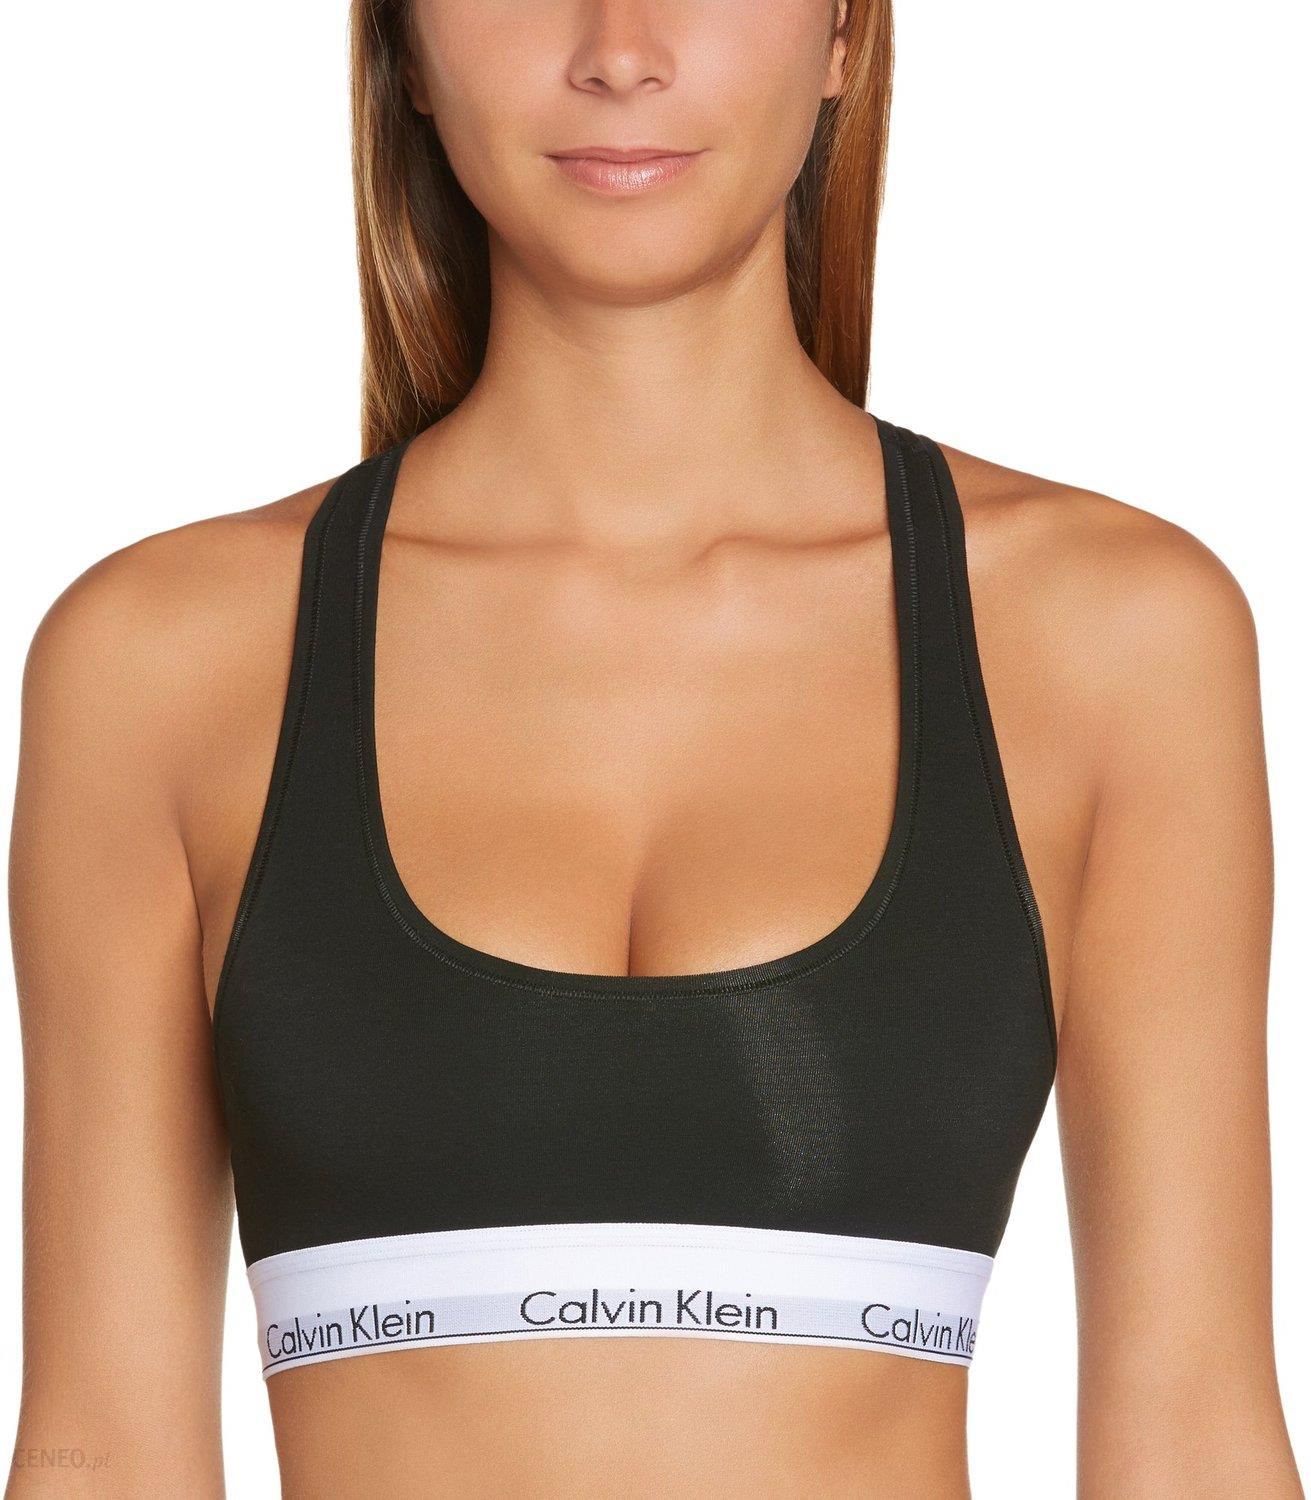 Biustonosz Calvin Klein Underwear Bralette Roz. S - Ceny i opinie 